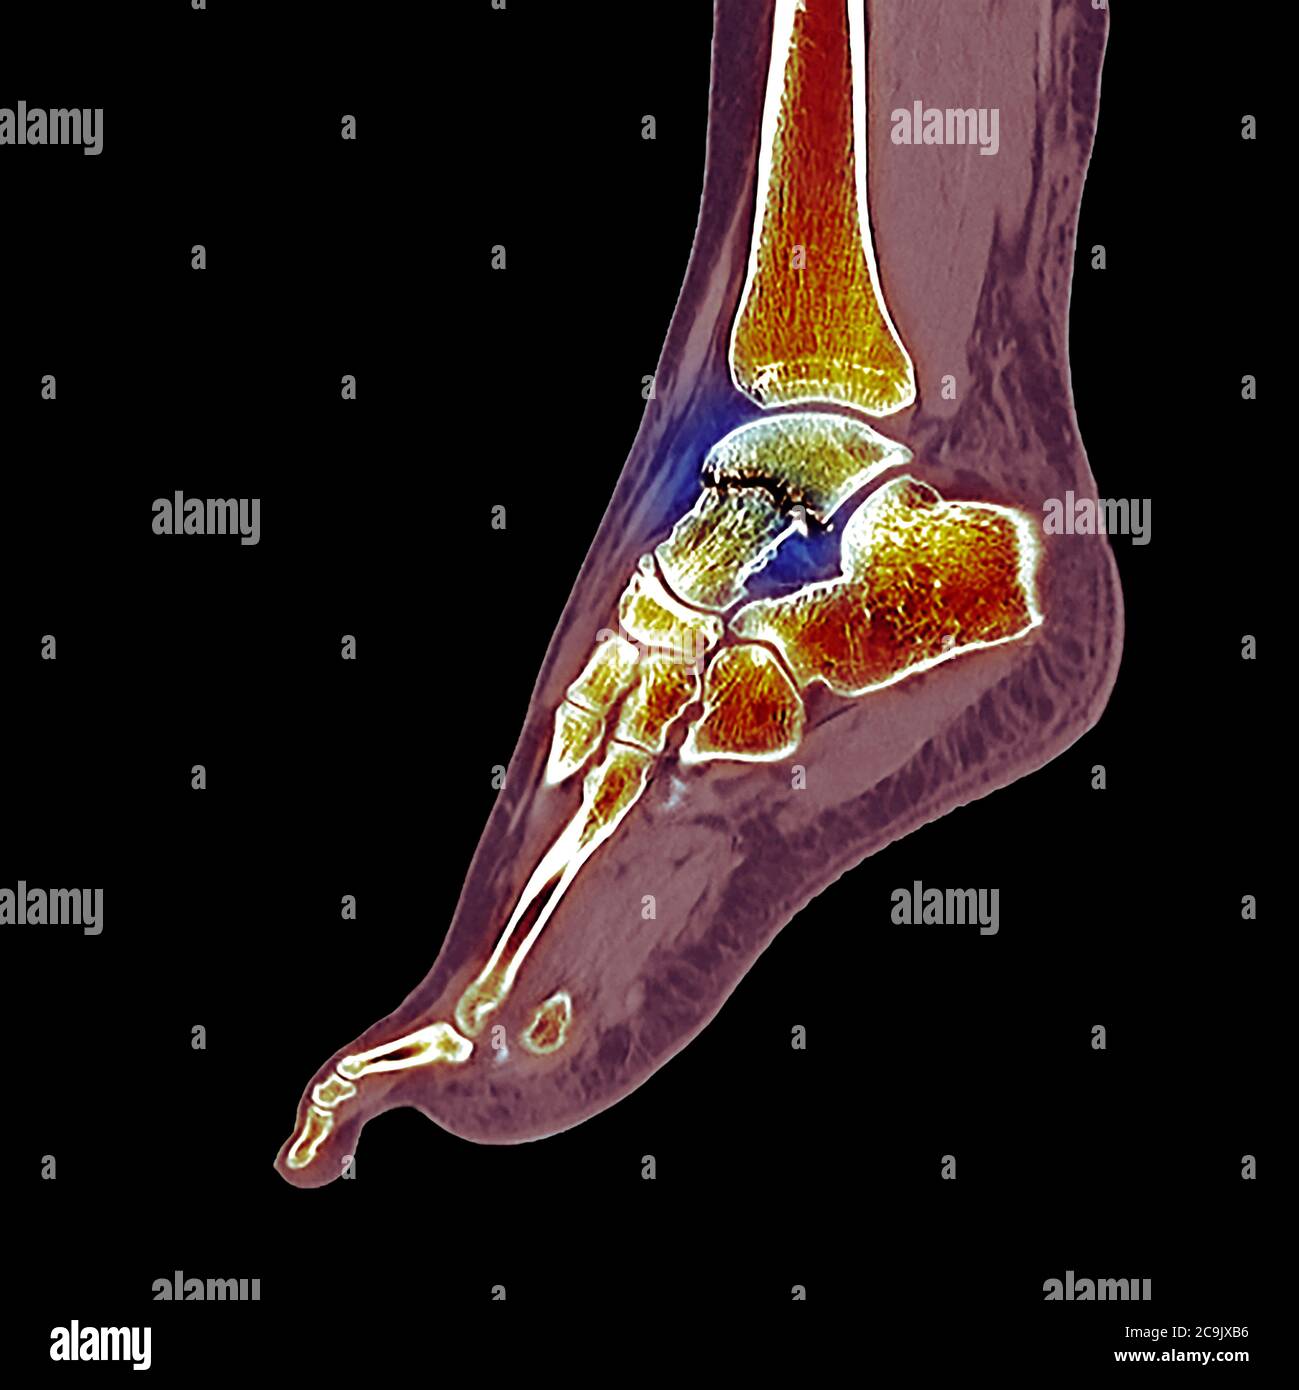 Fracture de l'os de la cheville. Tomodensitométrie colorée (CT) des os du pied et de la cheville d'une femme de 23 ans avec une comminée (fracturée) Banque D'Images